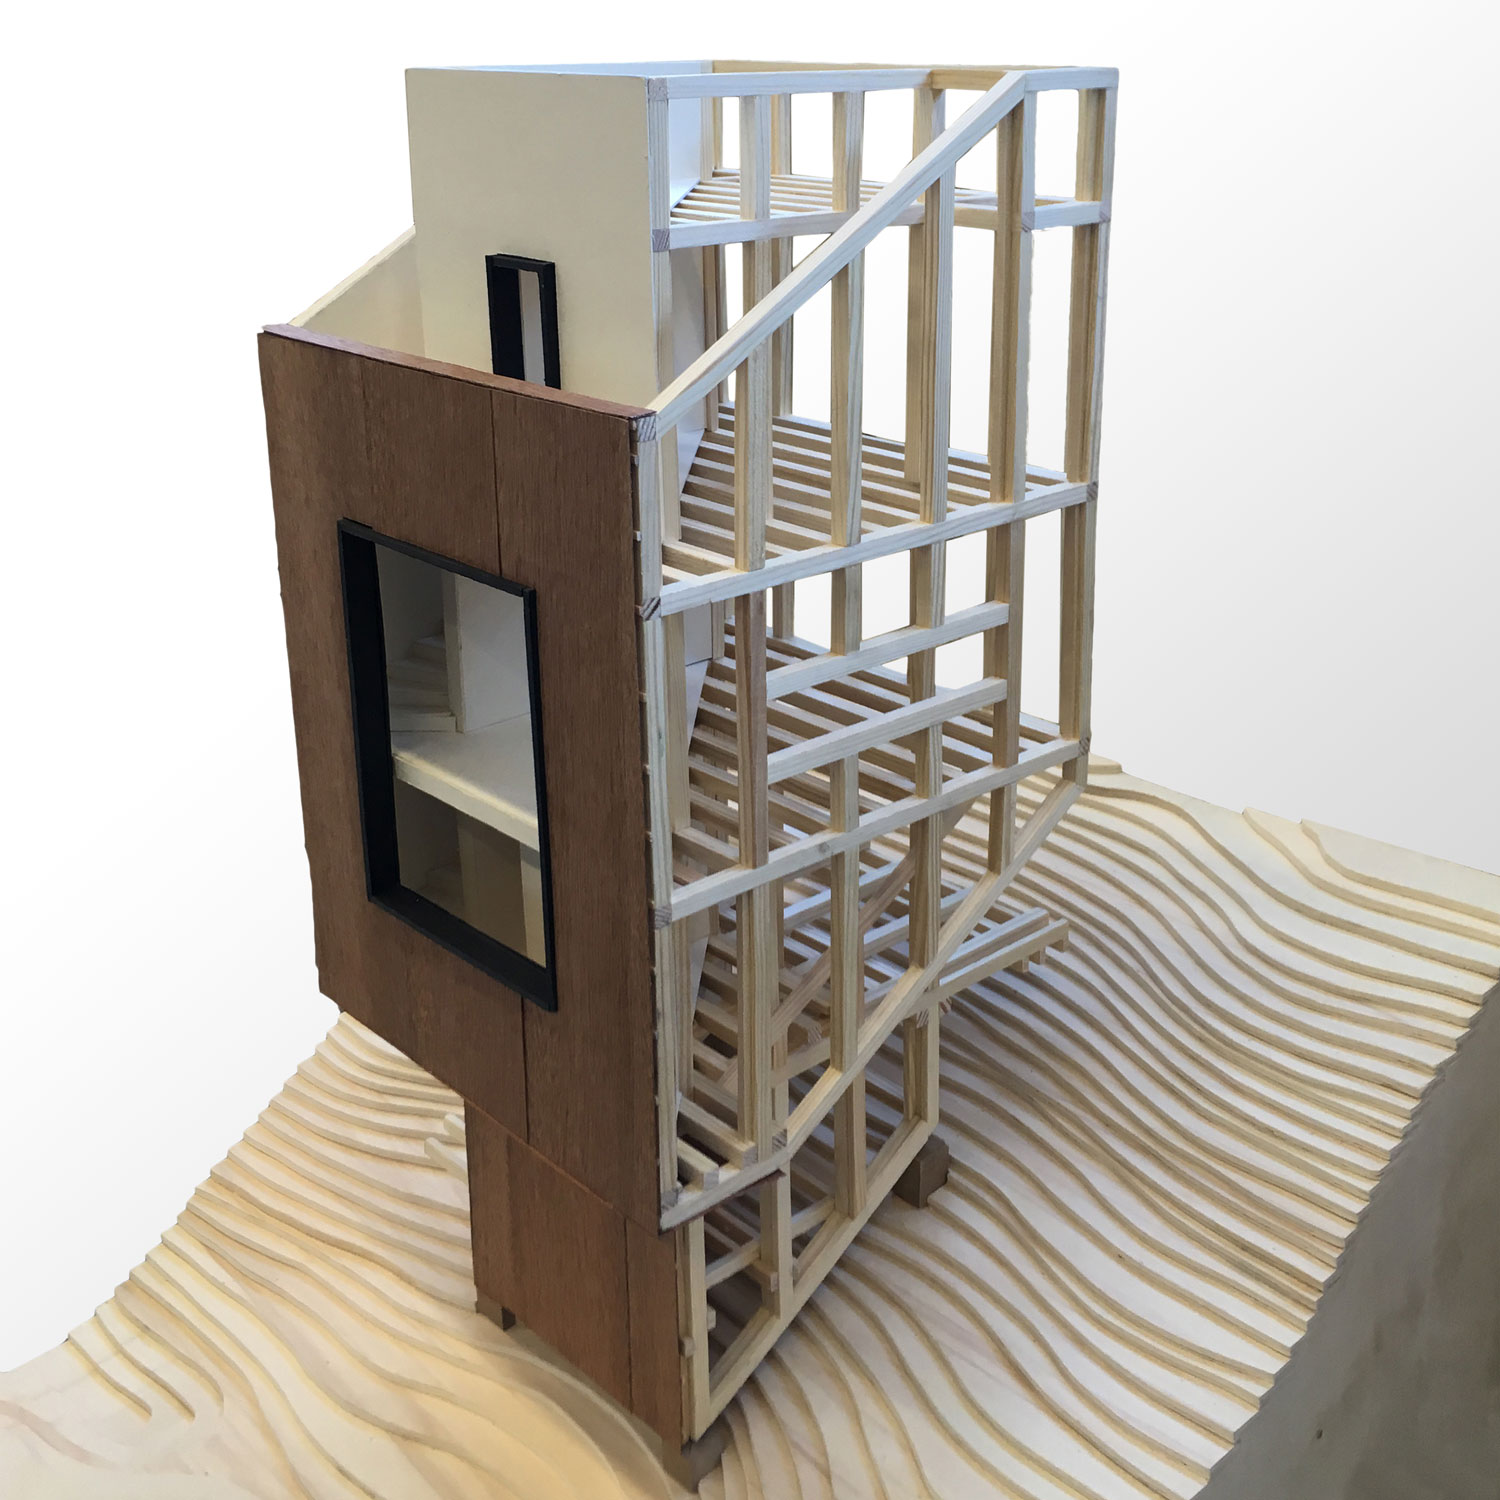 3D Konstruktionsmodell eines Treppenhauses.